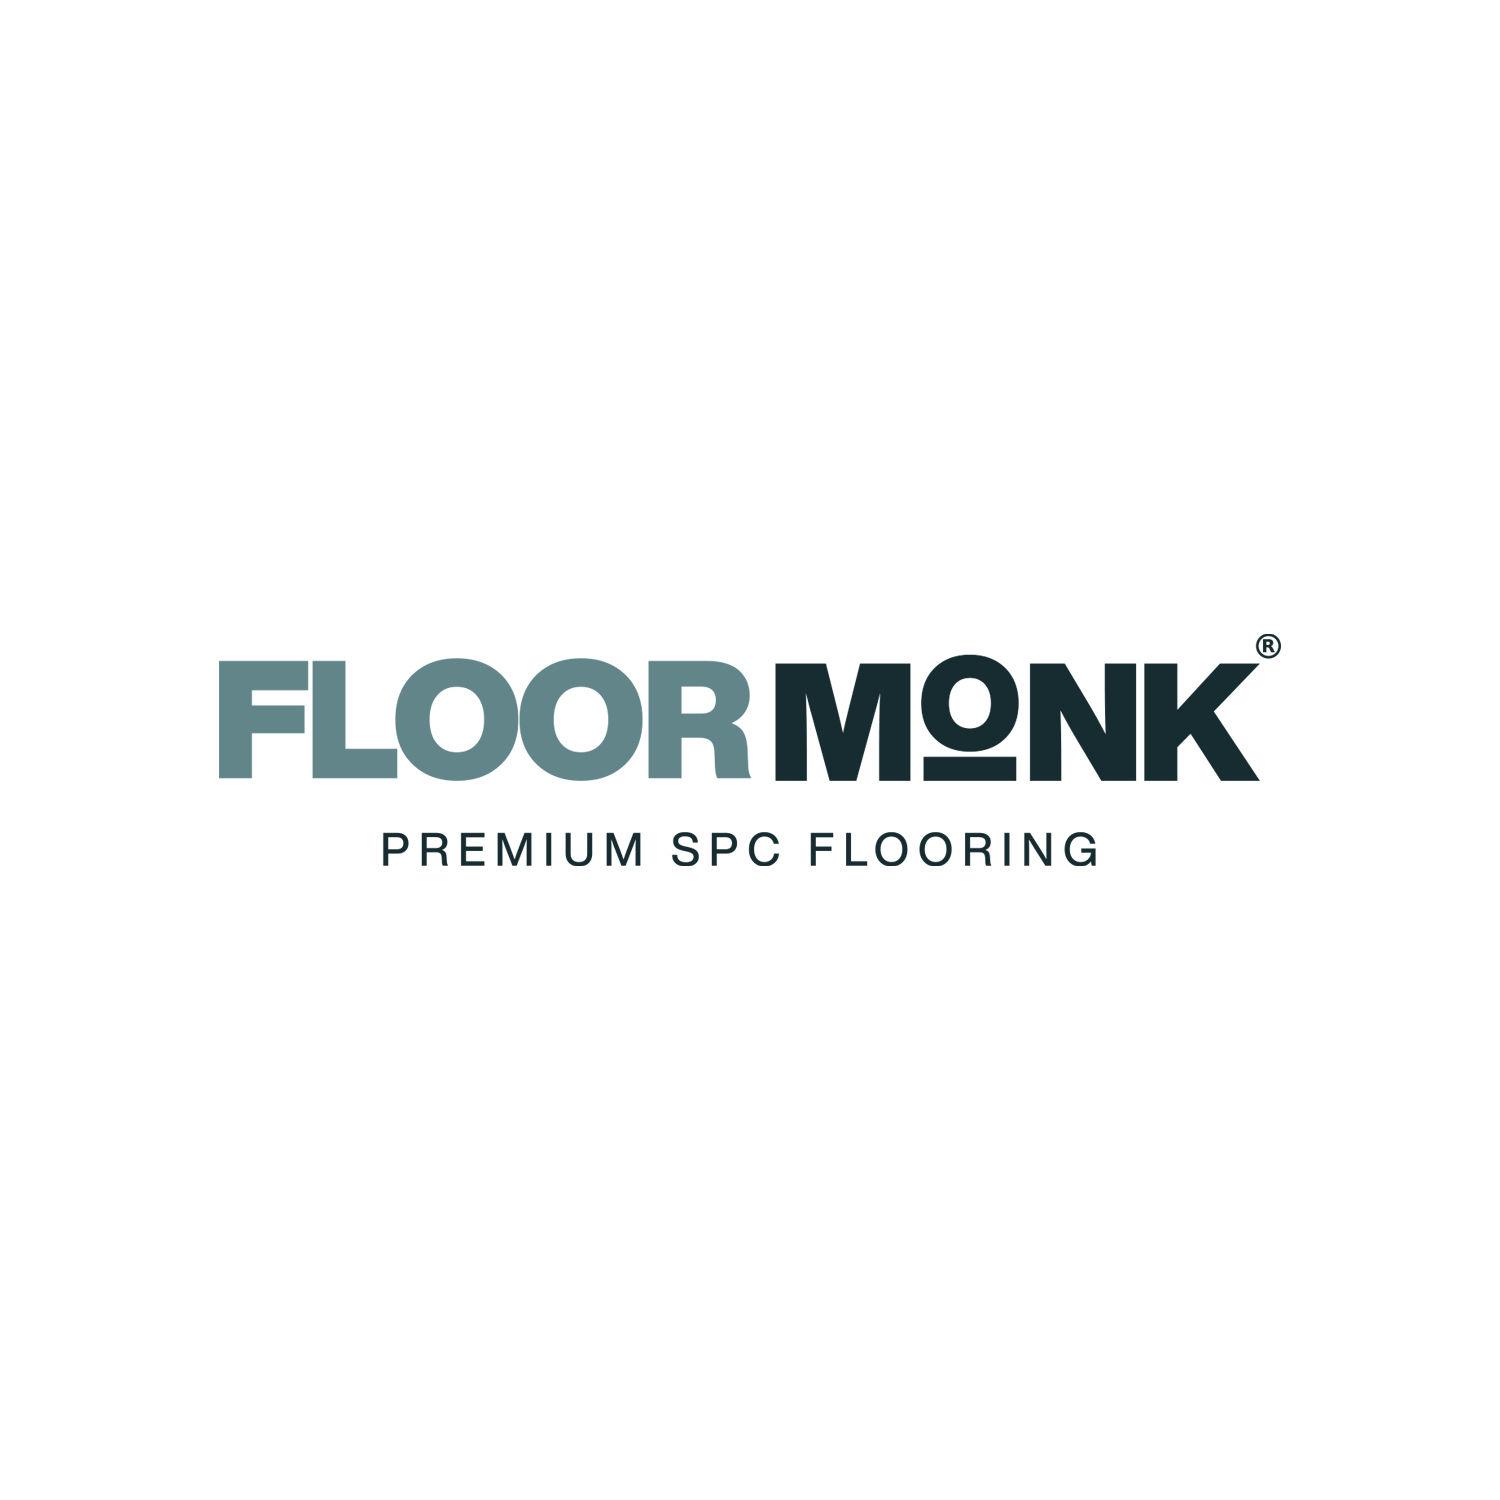 Floormonk Premium SPC Flooring